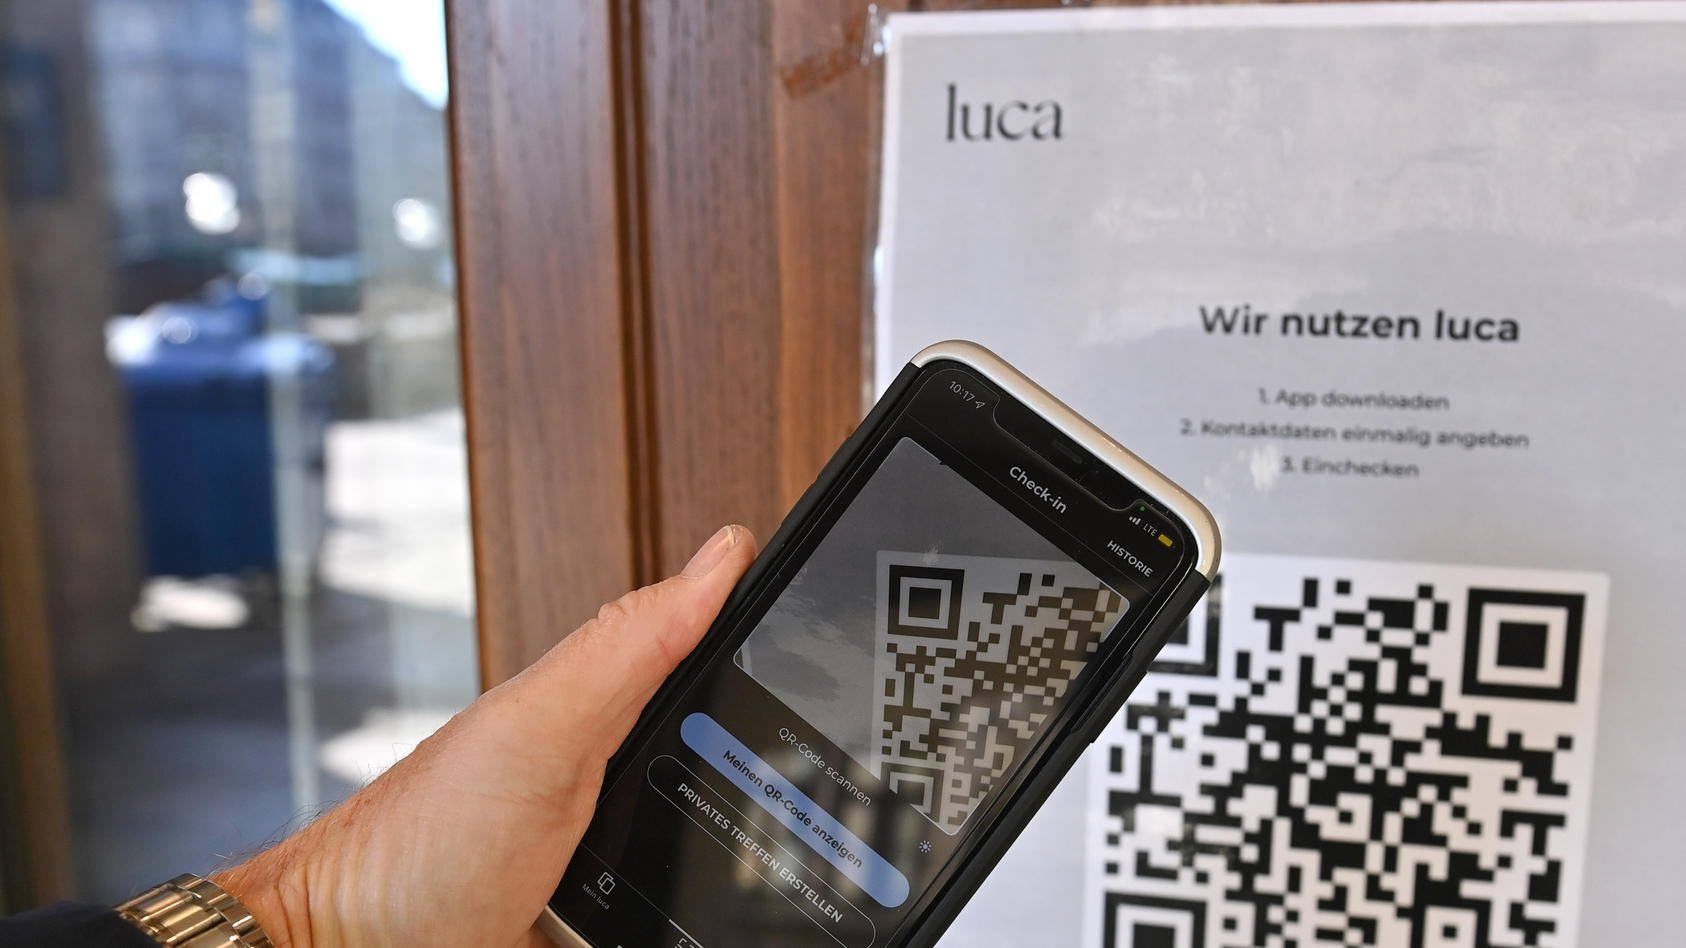 Einchecken mit der Luca App. Hinweisschild mit Informationen zur Schnellregistrierung mit der LUCA App an der Eingangstuer an einem Restaurant,